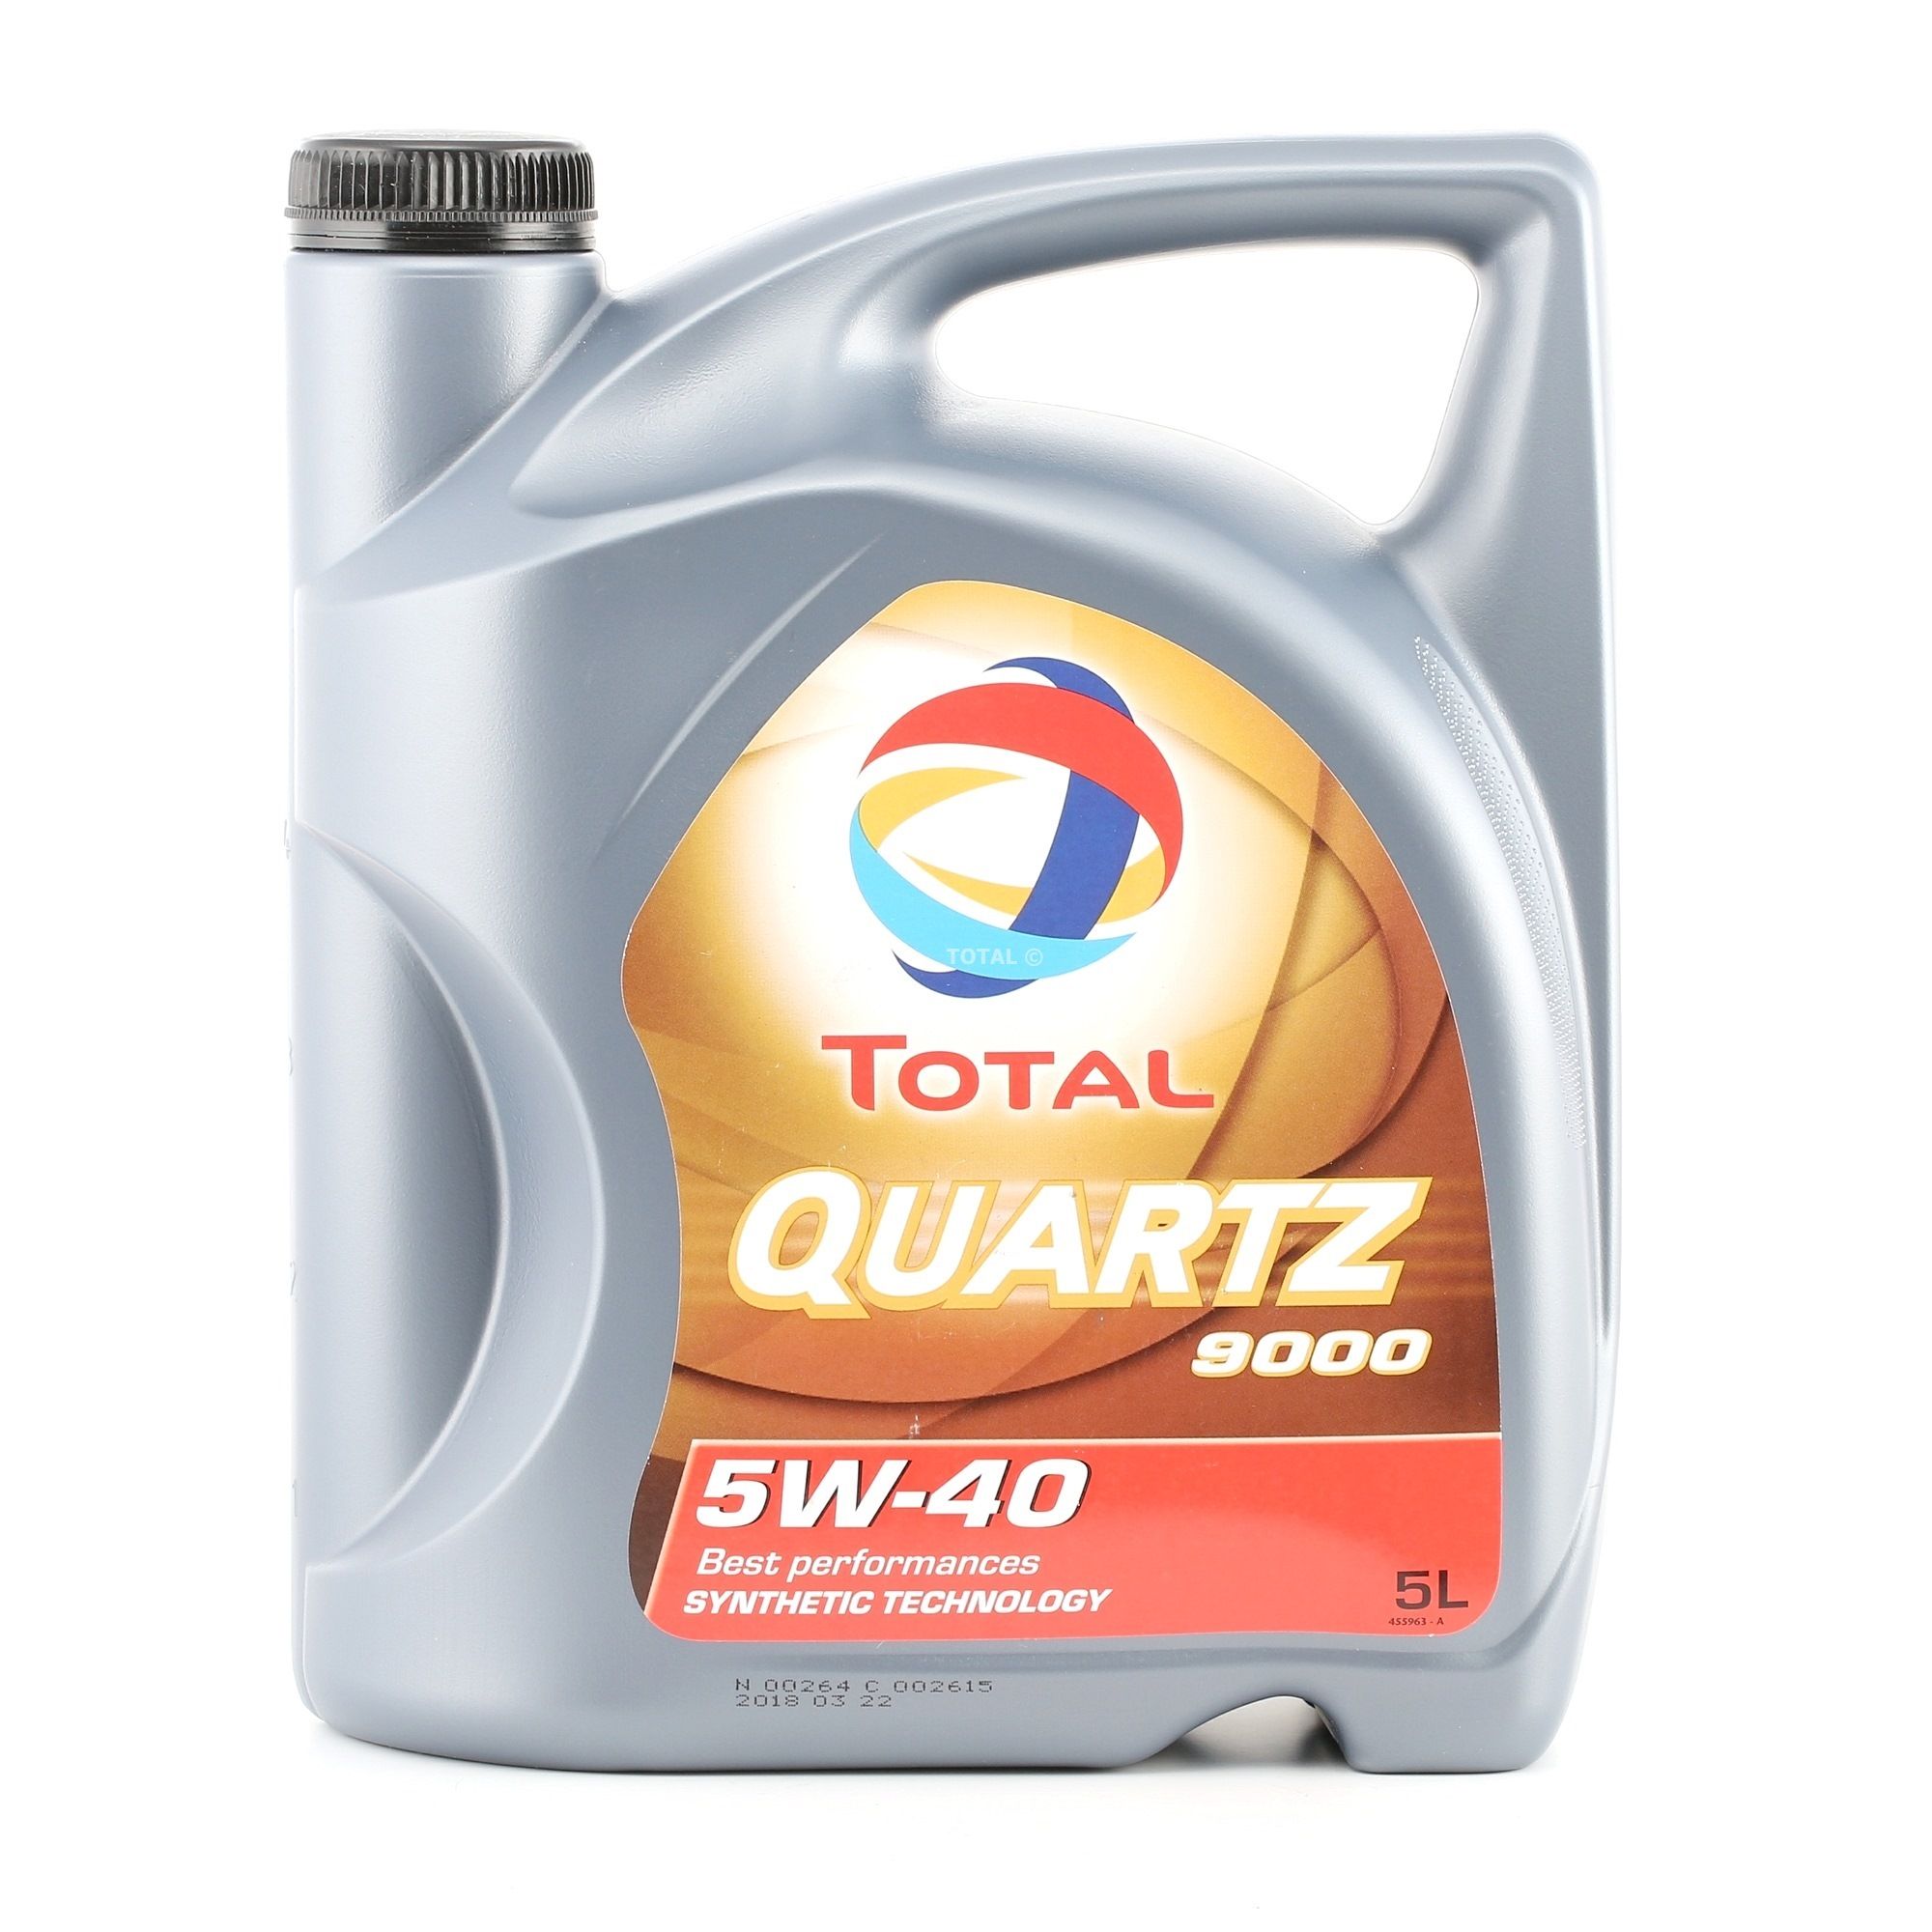 201510301041 TOTAL Quartz, 9000 5W-40, 5L, Synthetische olie Motorolie 2198275 koop goedkoop